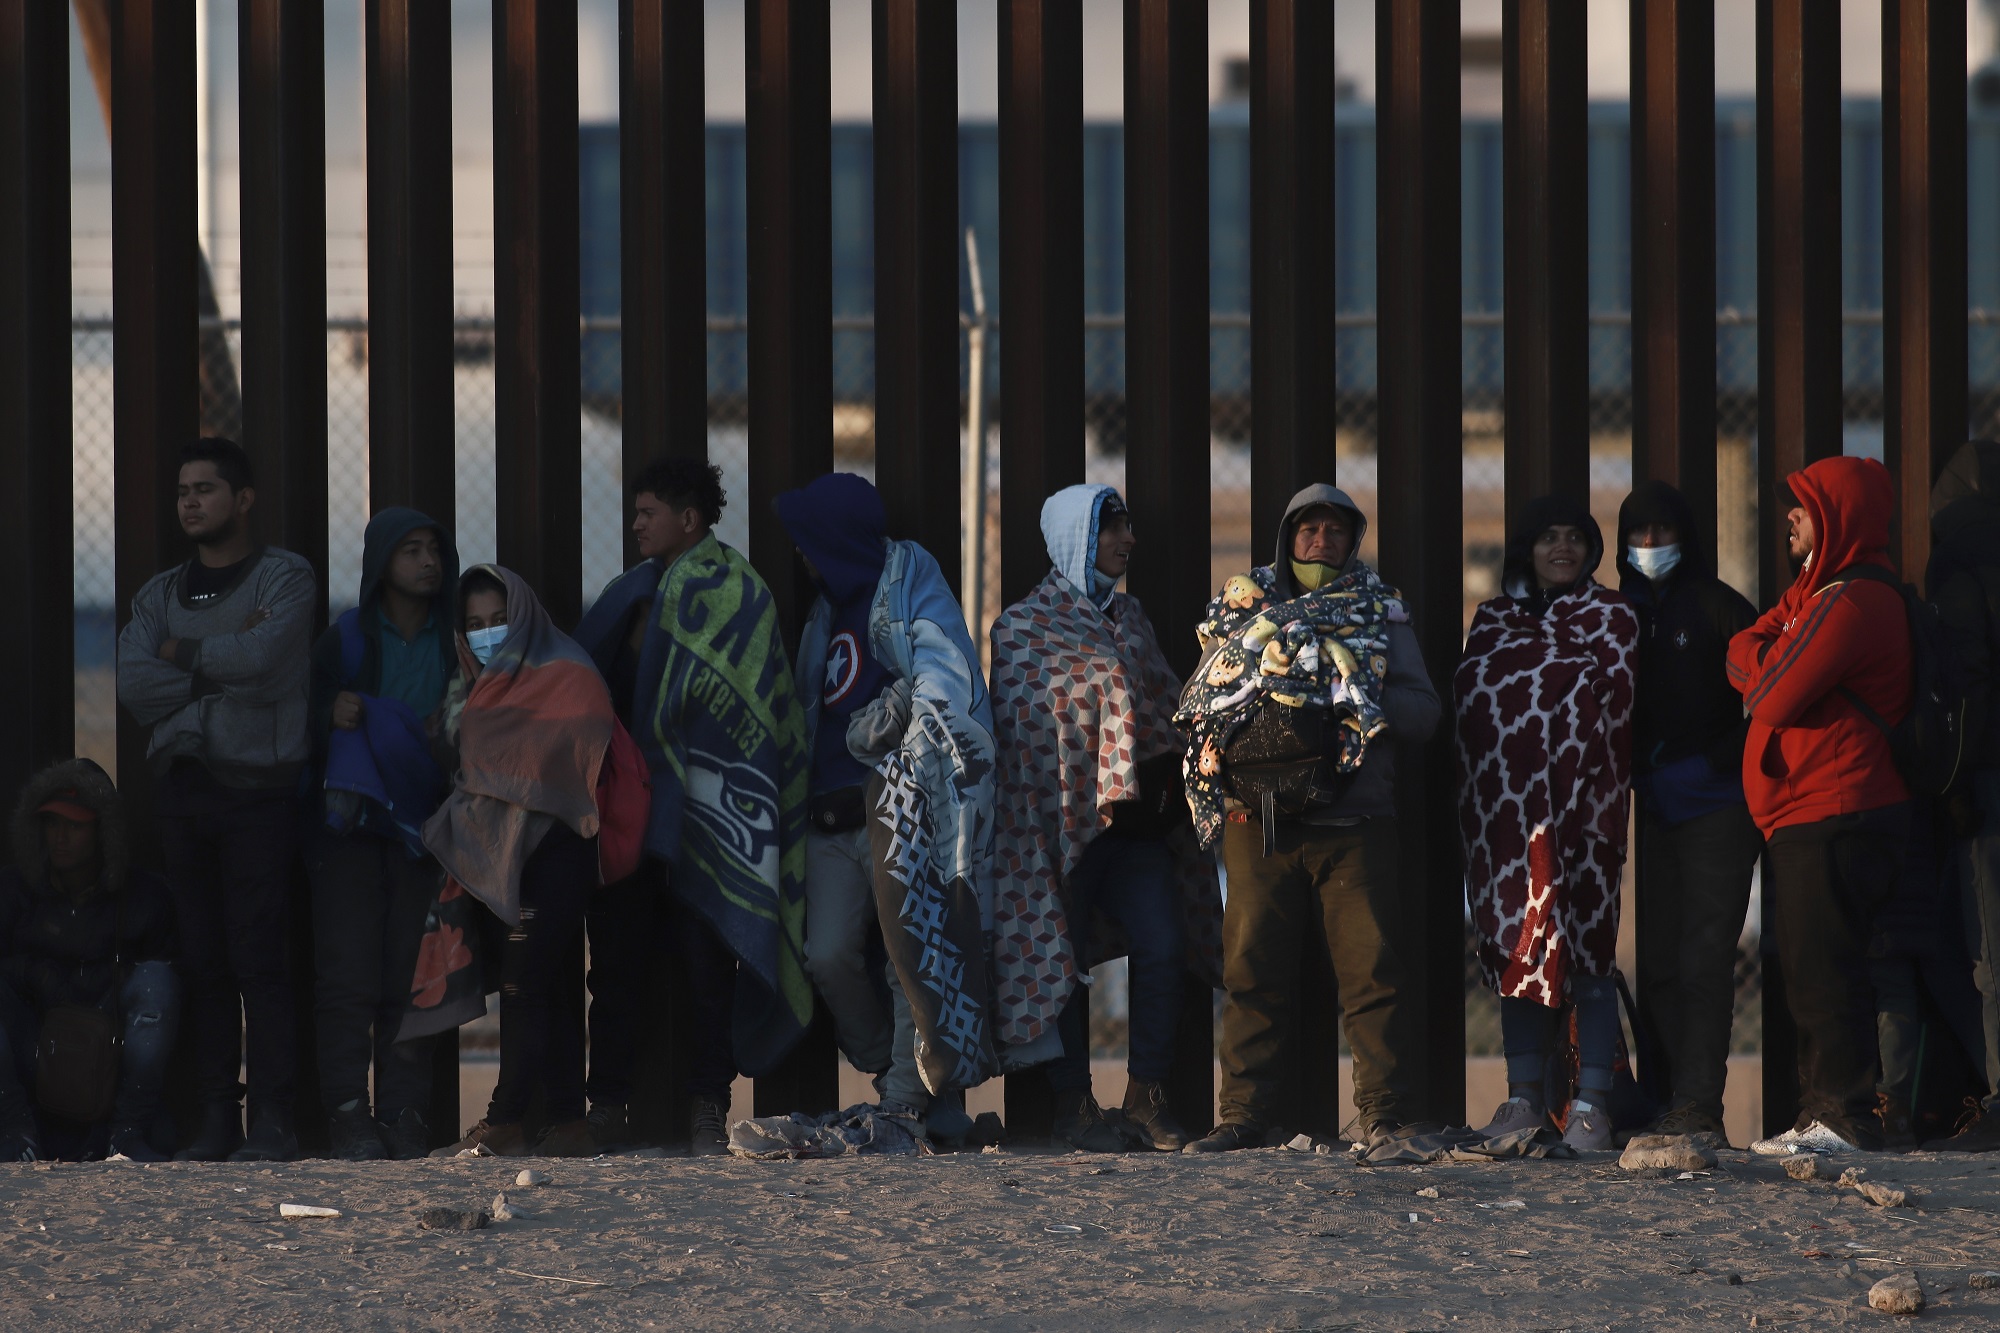 ΗΠΑ-Μεξικό: Εκατοντάδες μετανάστες συνωστίζονται στα σύνορα με αυξημένες προσδοκίες για άσυλο